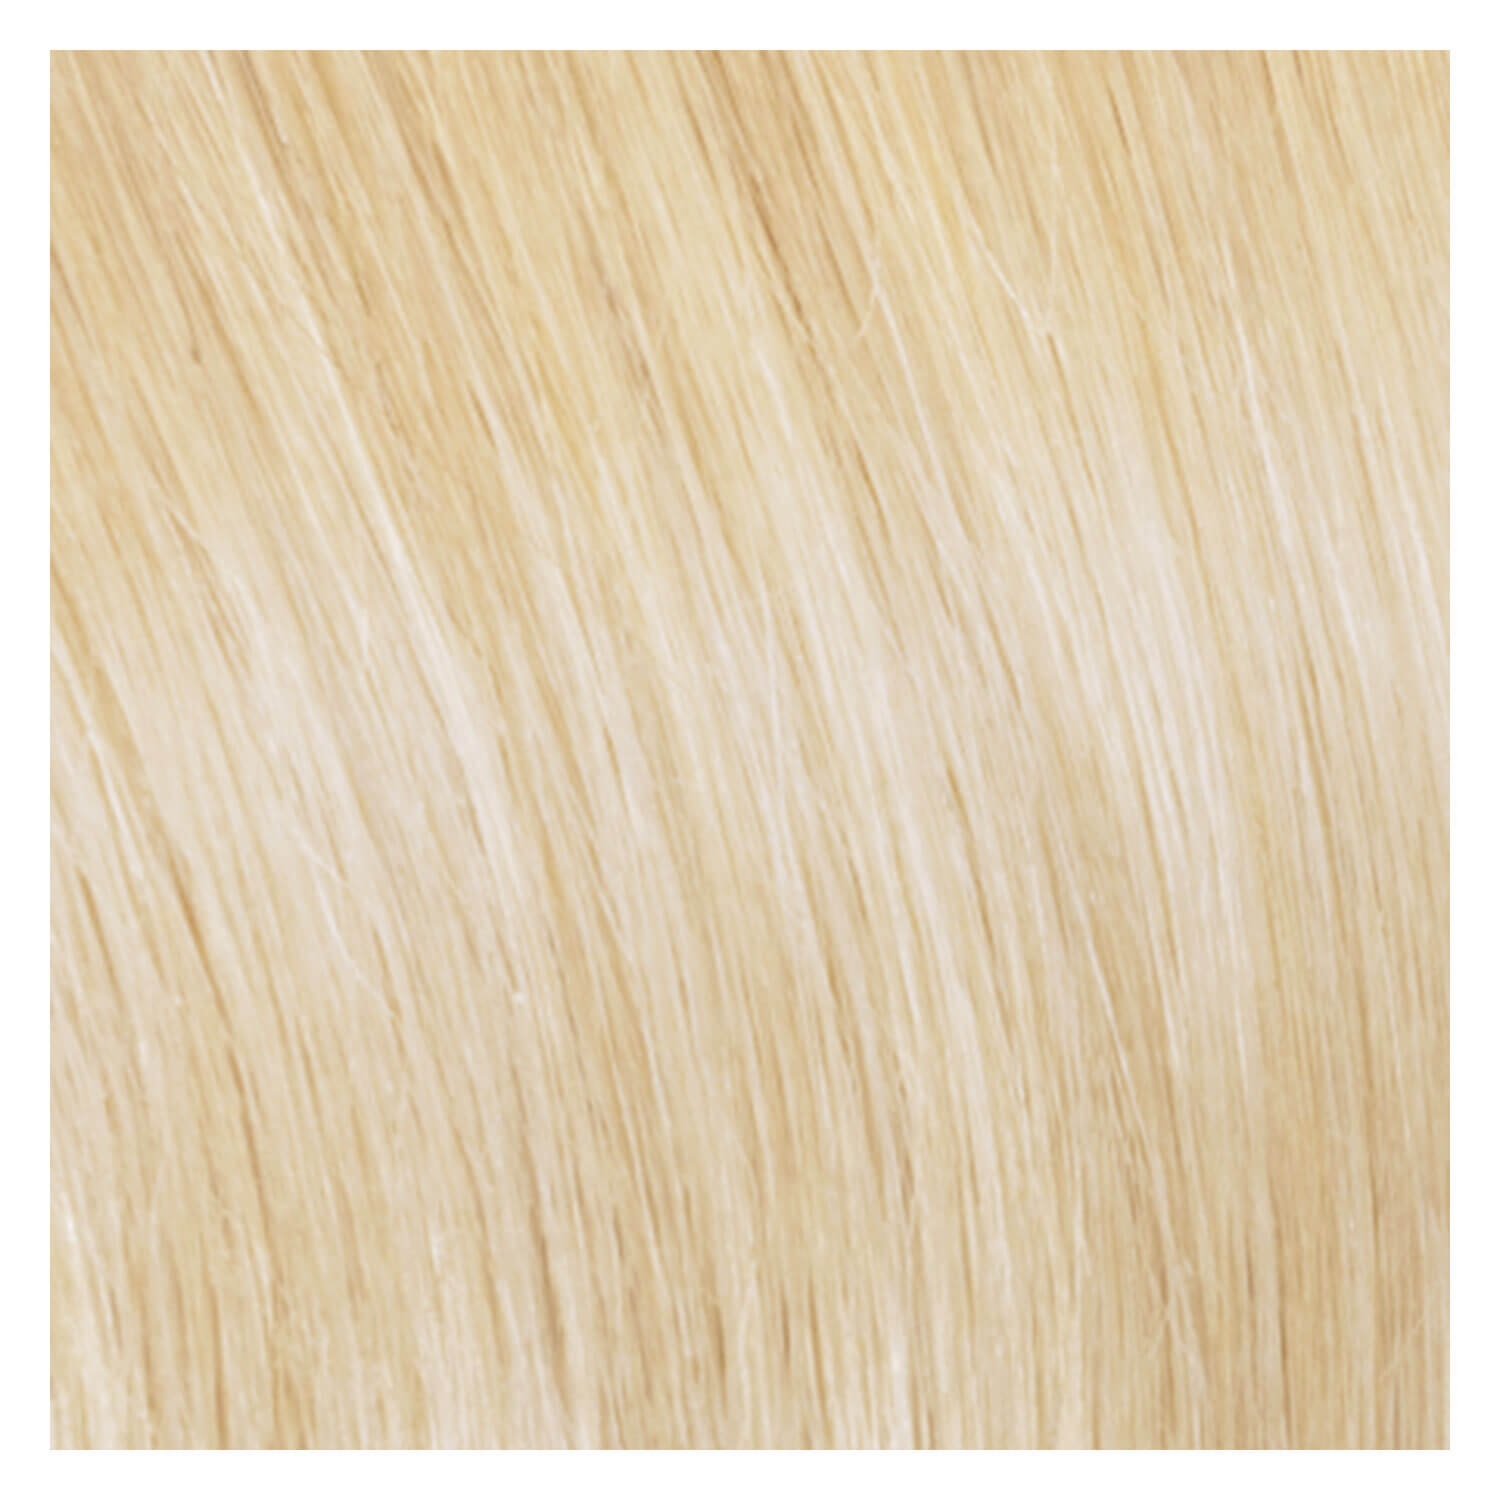 Produktbild von SHE Flip In-System Hair Extensions - 1001 Sehr helles Platinblond 50/55cm